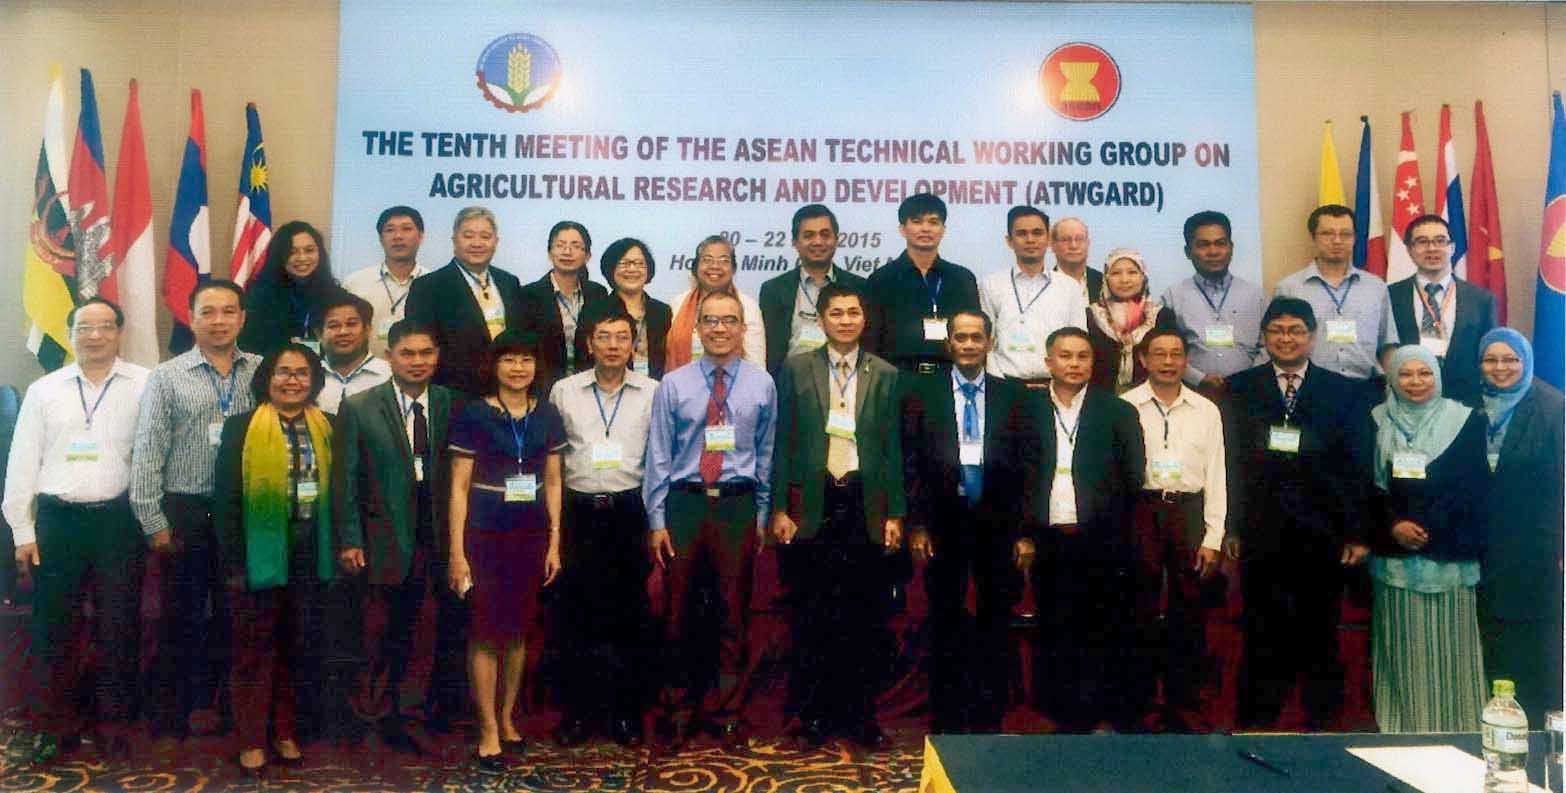 Hội nghị lần thứ 10 Nhóm công tác kỹ thuật ASEAN về nghiên cứu và phát triển nông nghiệp (ATWGARD)